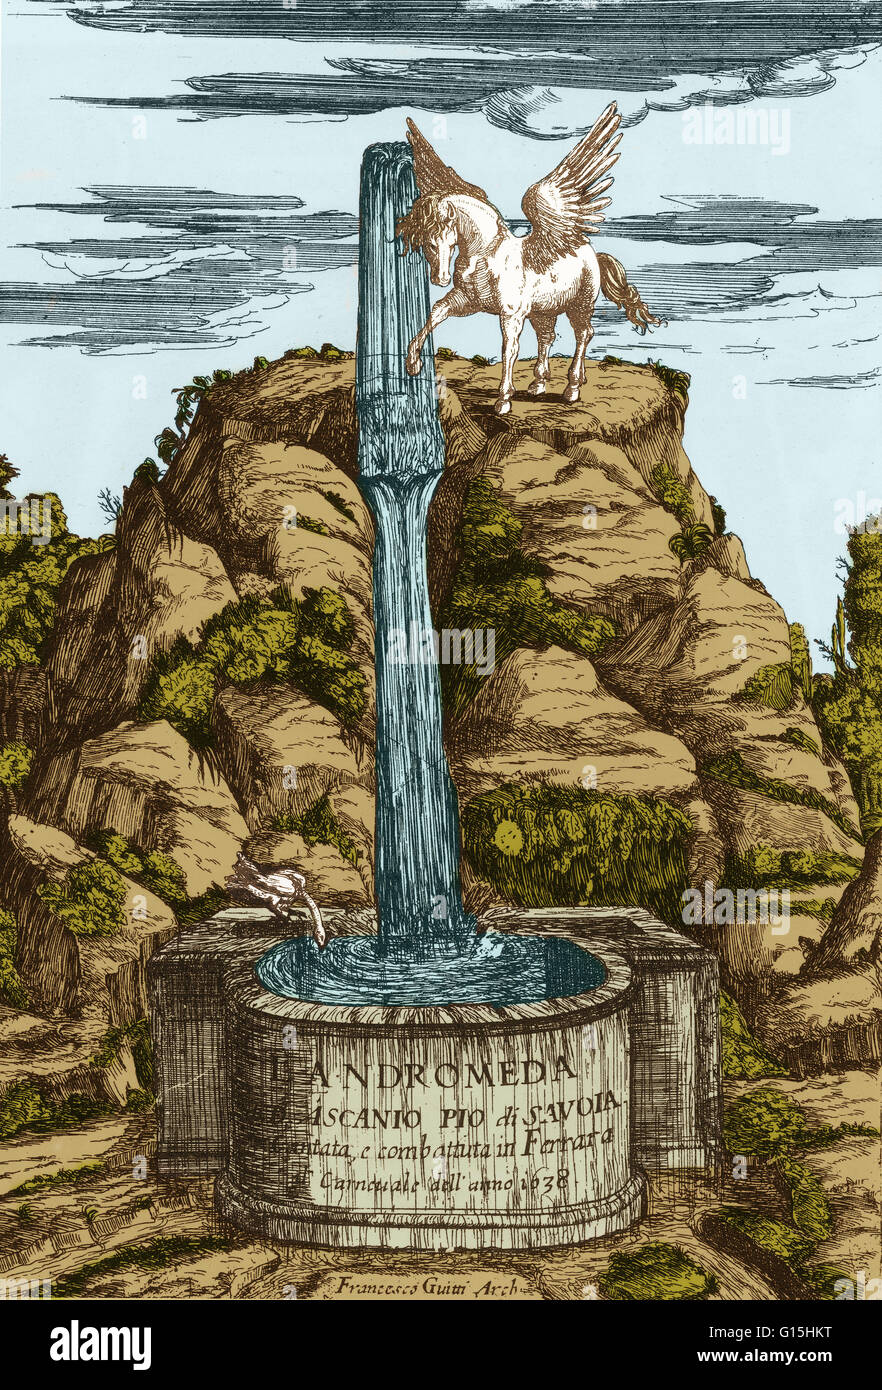 Pegasus en el monte Parnaso. Página de título por Francesco Guitti de Ascanio Pio L'Andrómeda. Ferrera, 1638-39. Era el caballo alado Pegaso de Bellerophon, un mítico héroe griego que lo atrapó en una fuente. Foto de stock